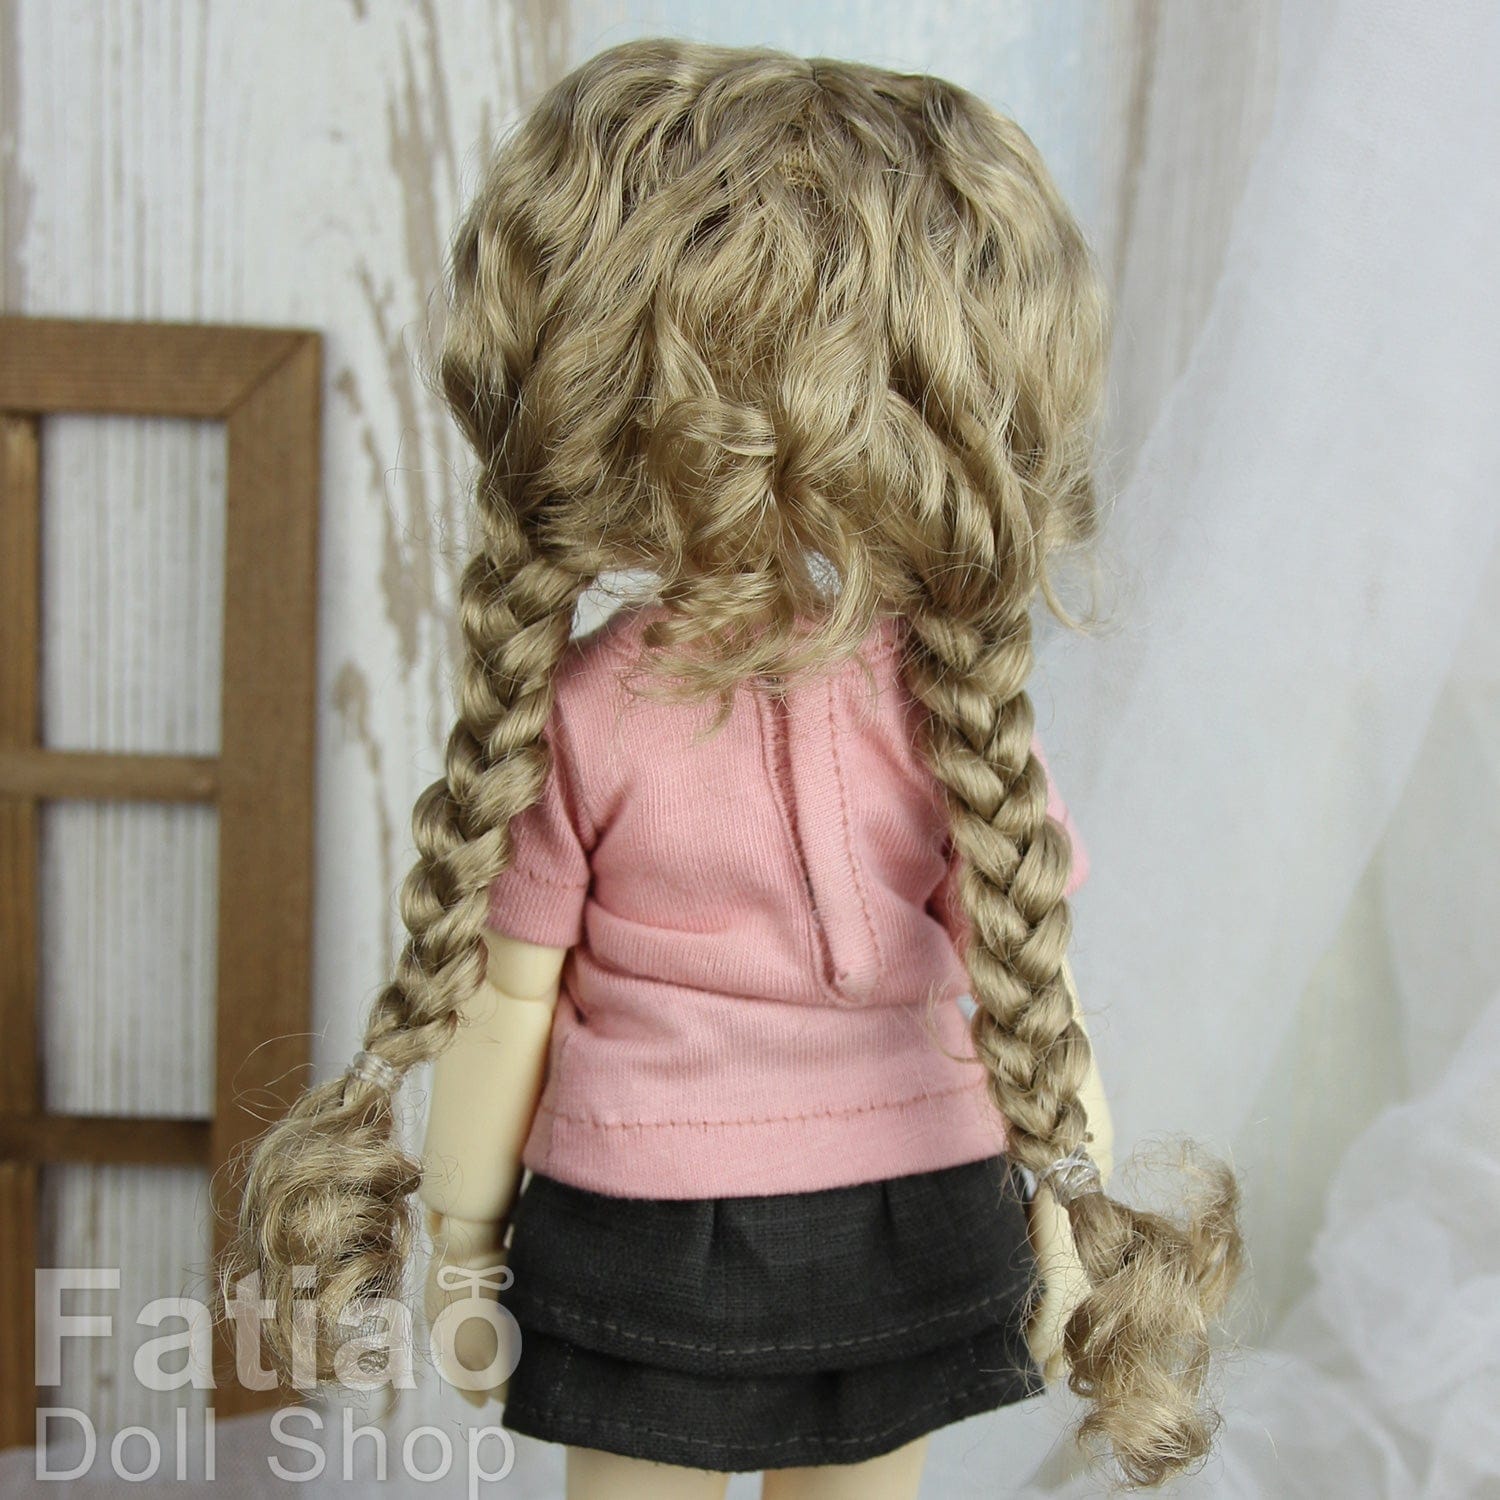 【Fatiao Doll Shop】FWF-723 娃用假髮 多色 / 6-7吋 BJD 6分 iMda2.6